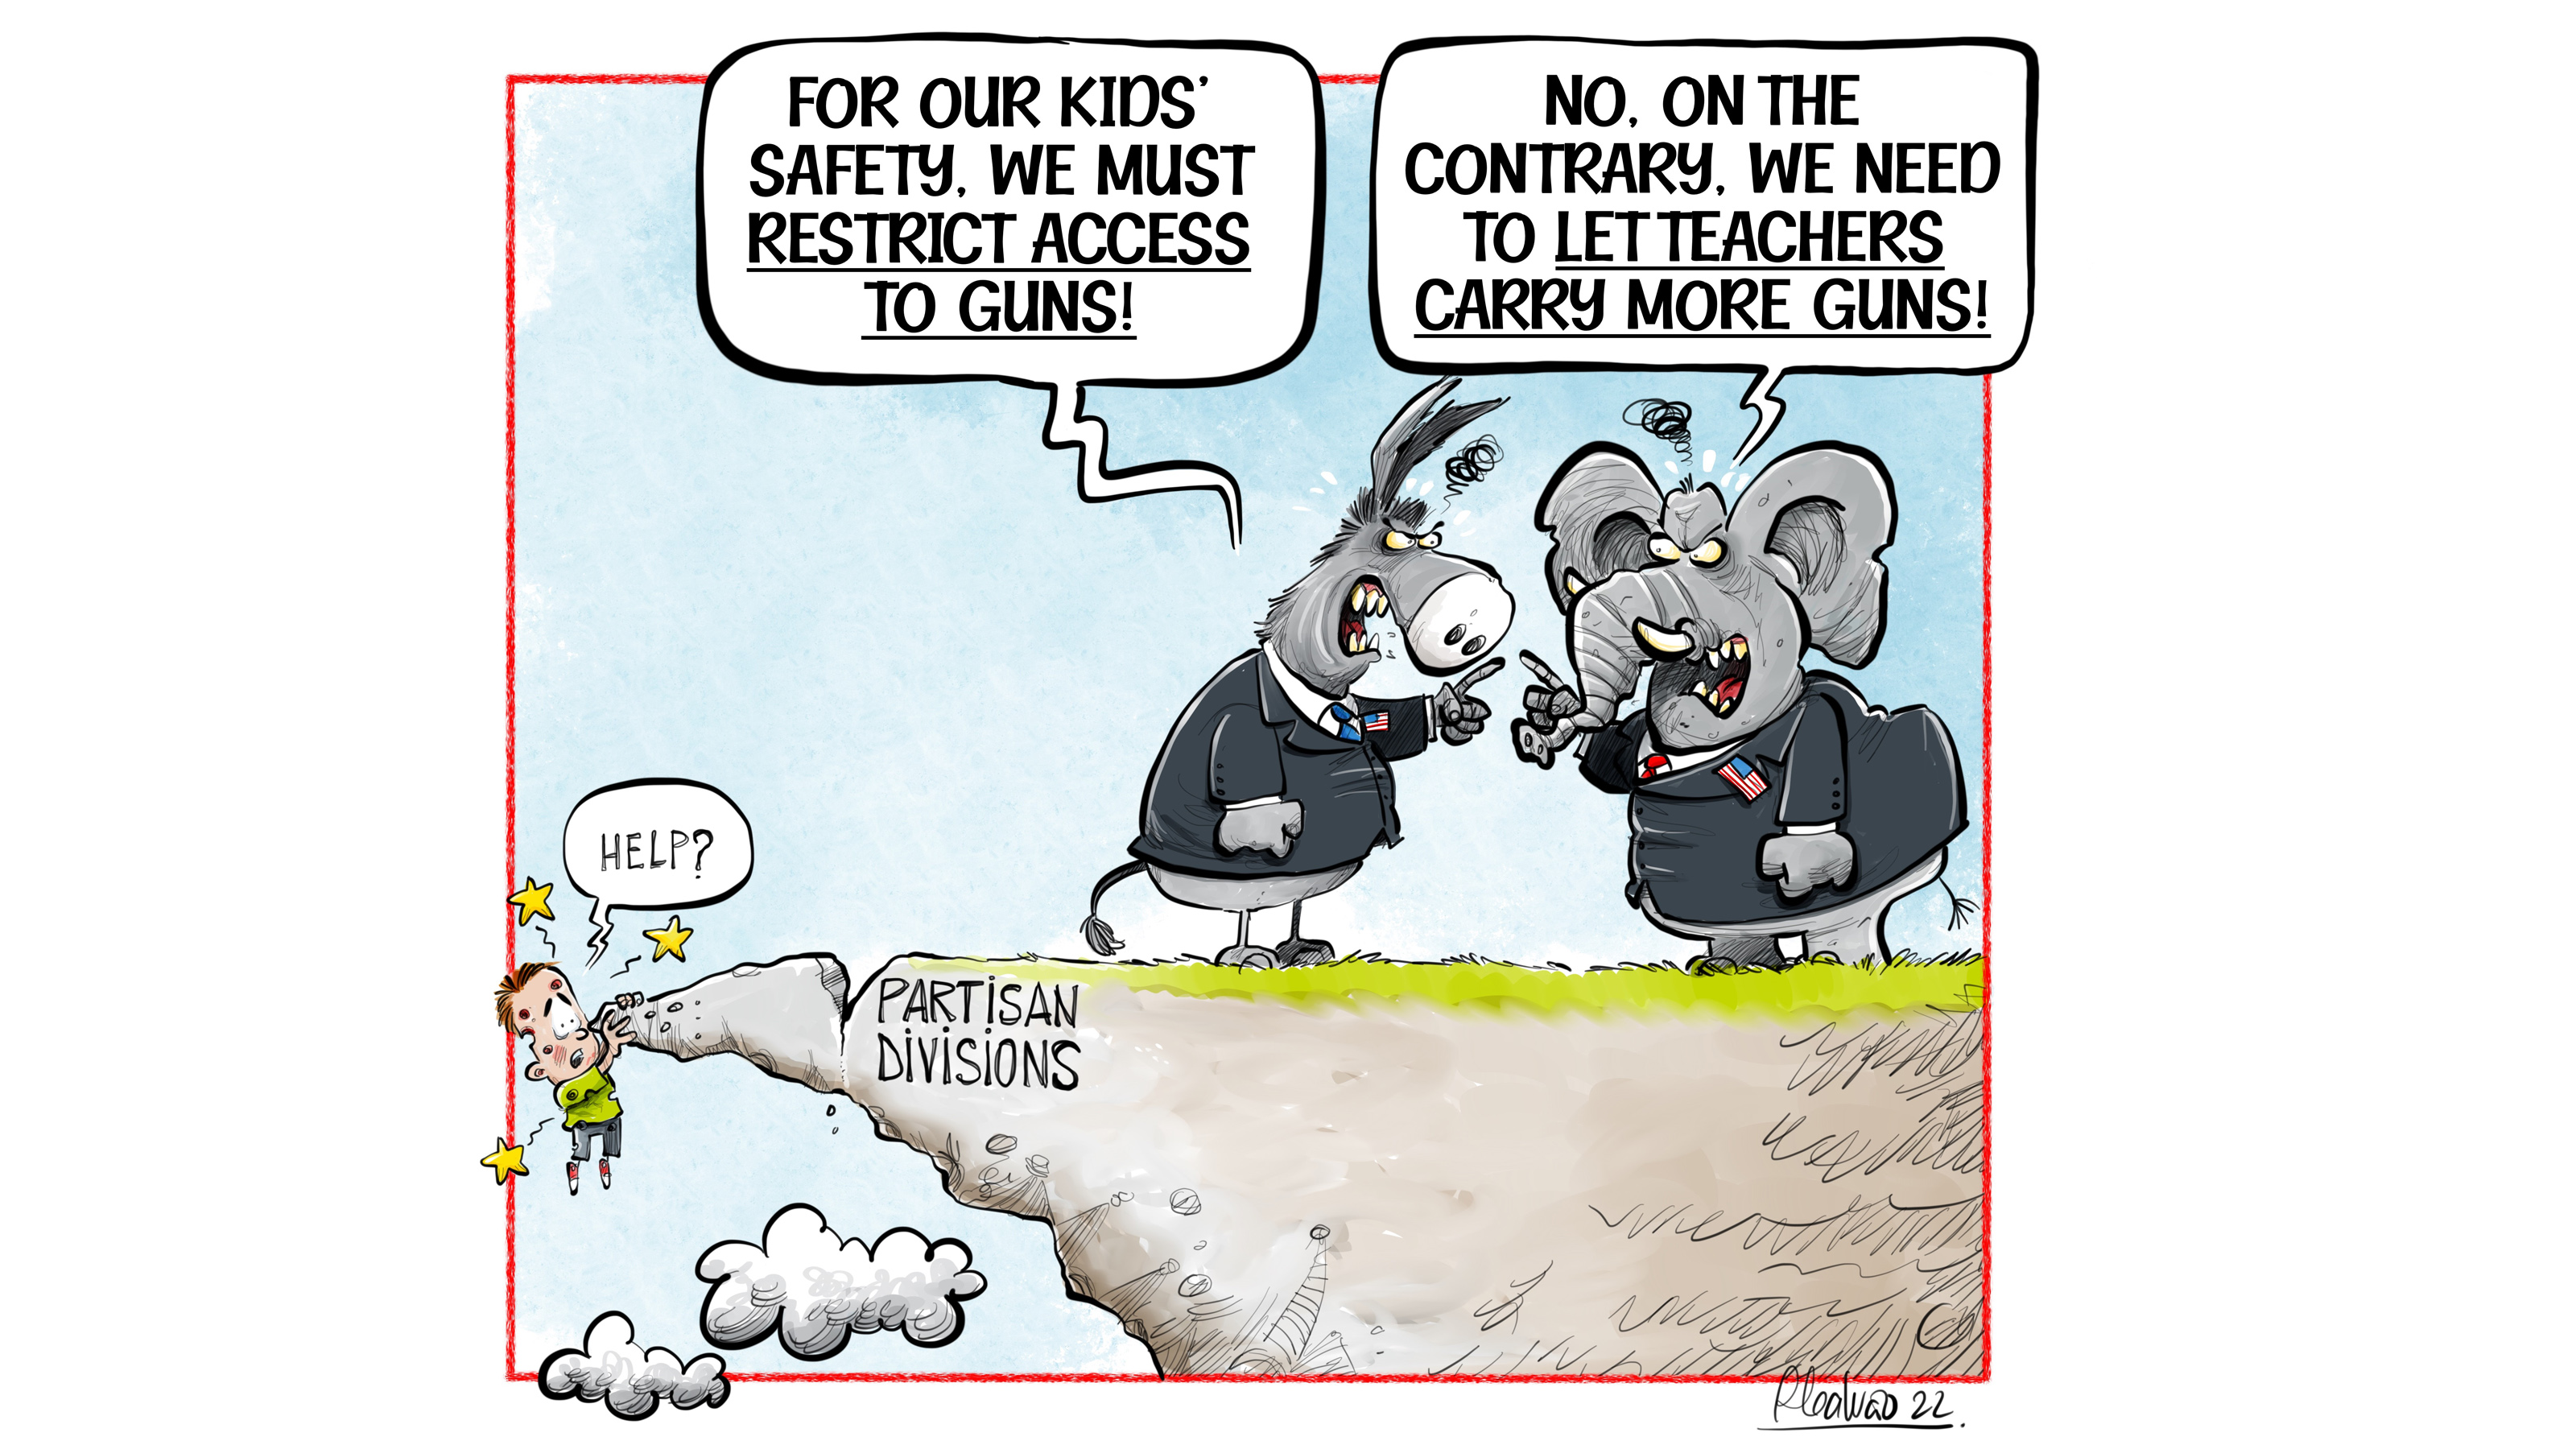 Partisan gun divide threatens children's safety  /CGTN